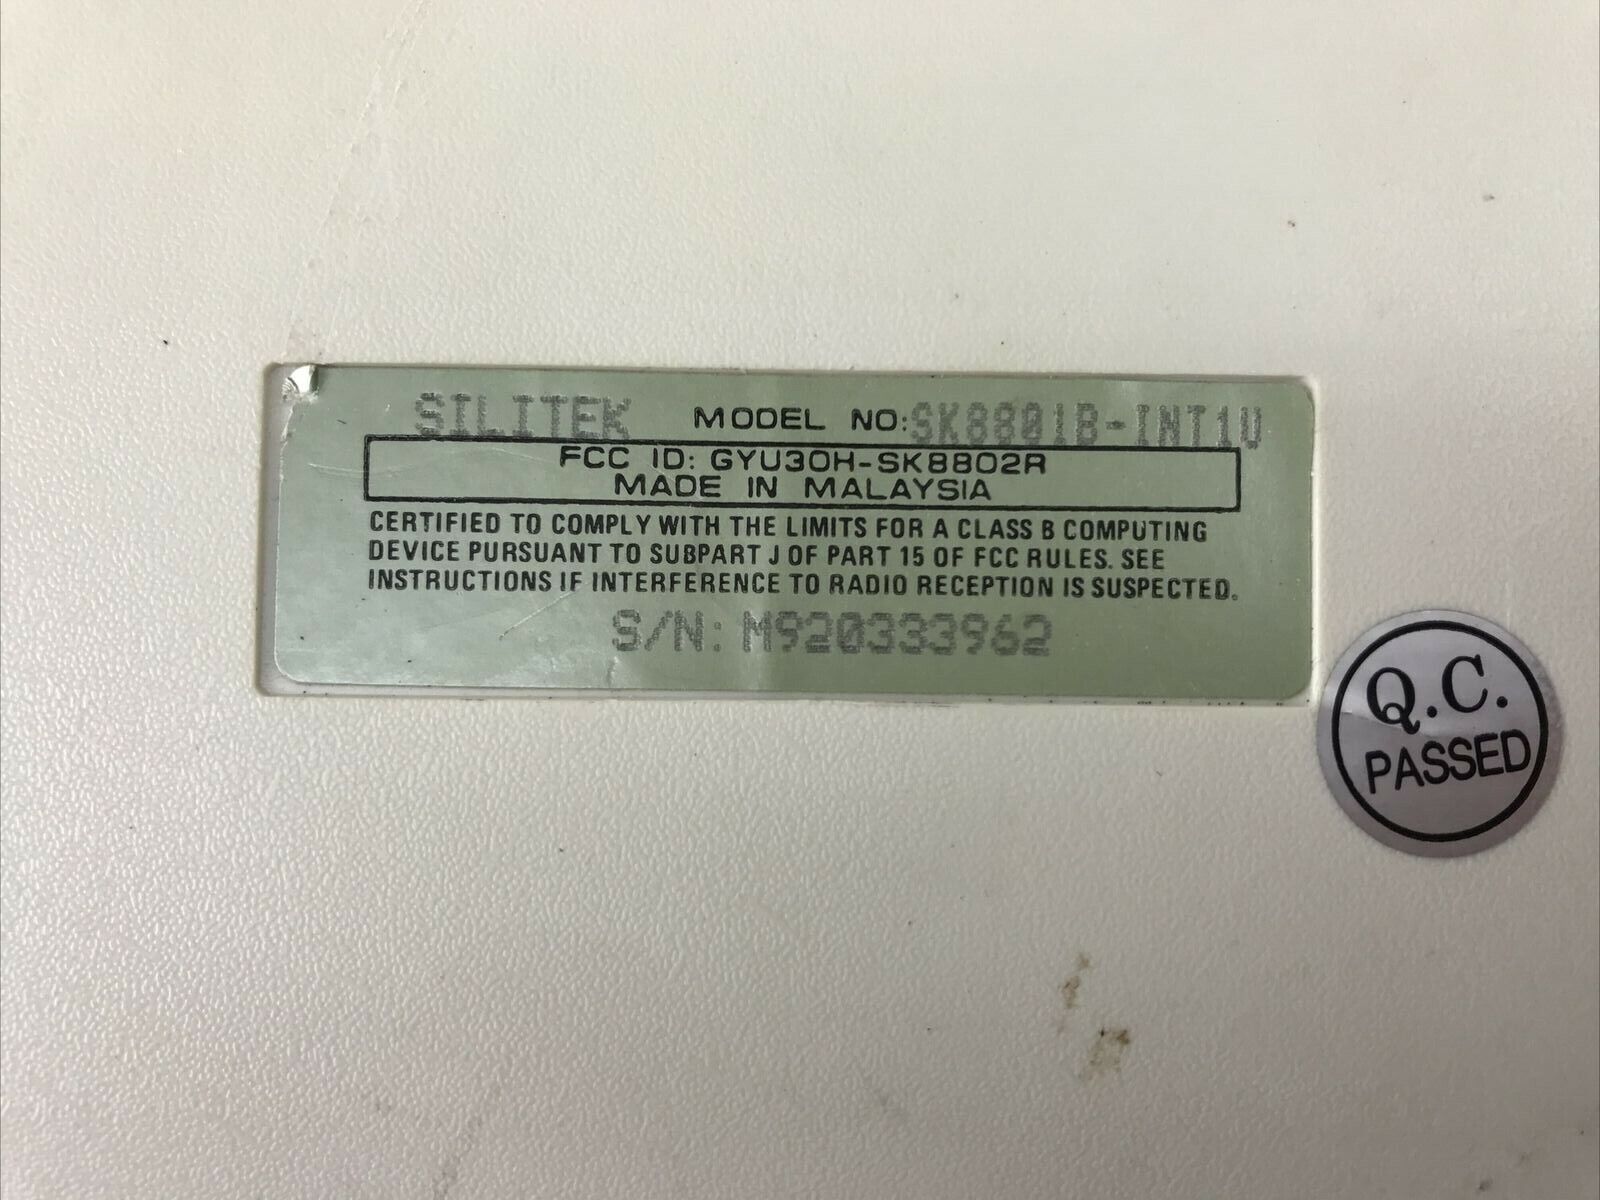 Vintage Silitek Keyboard SK8801B-INT1U